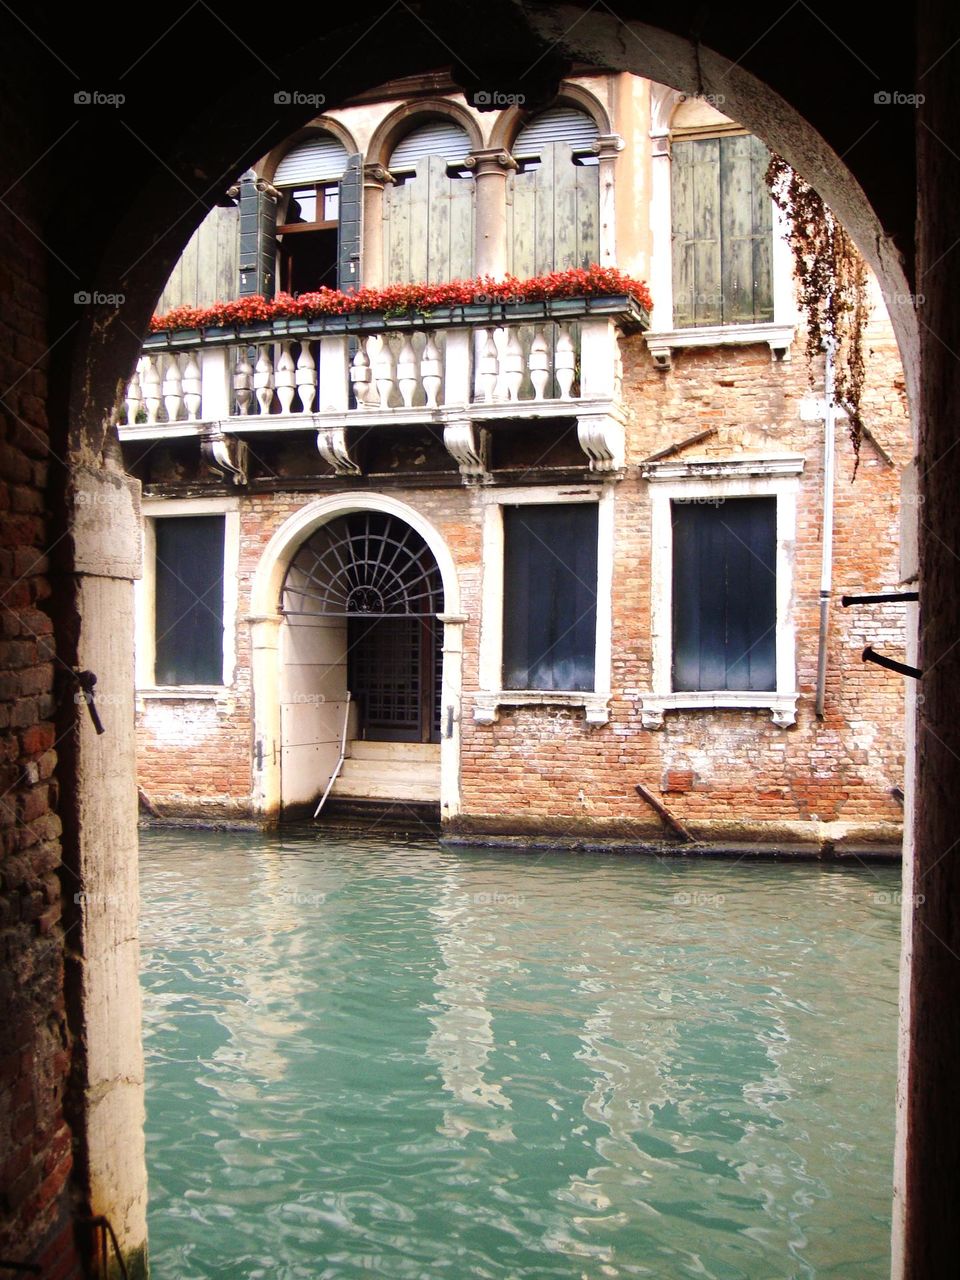  A look at Venice